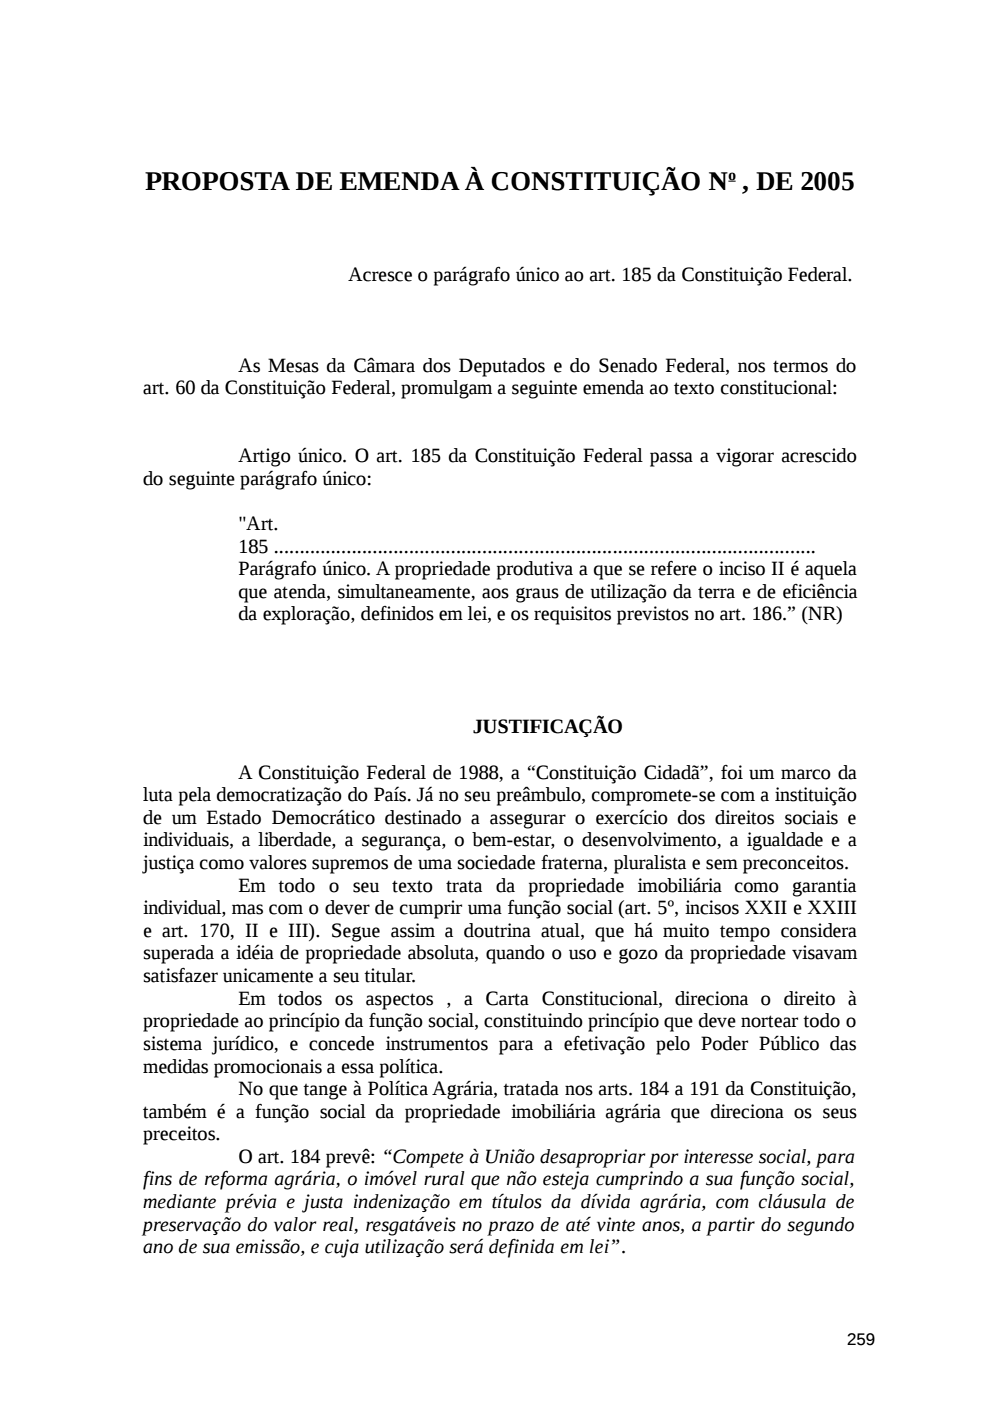 Page 259 from Relatório final da comissão